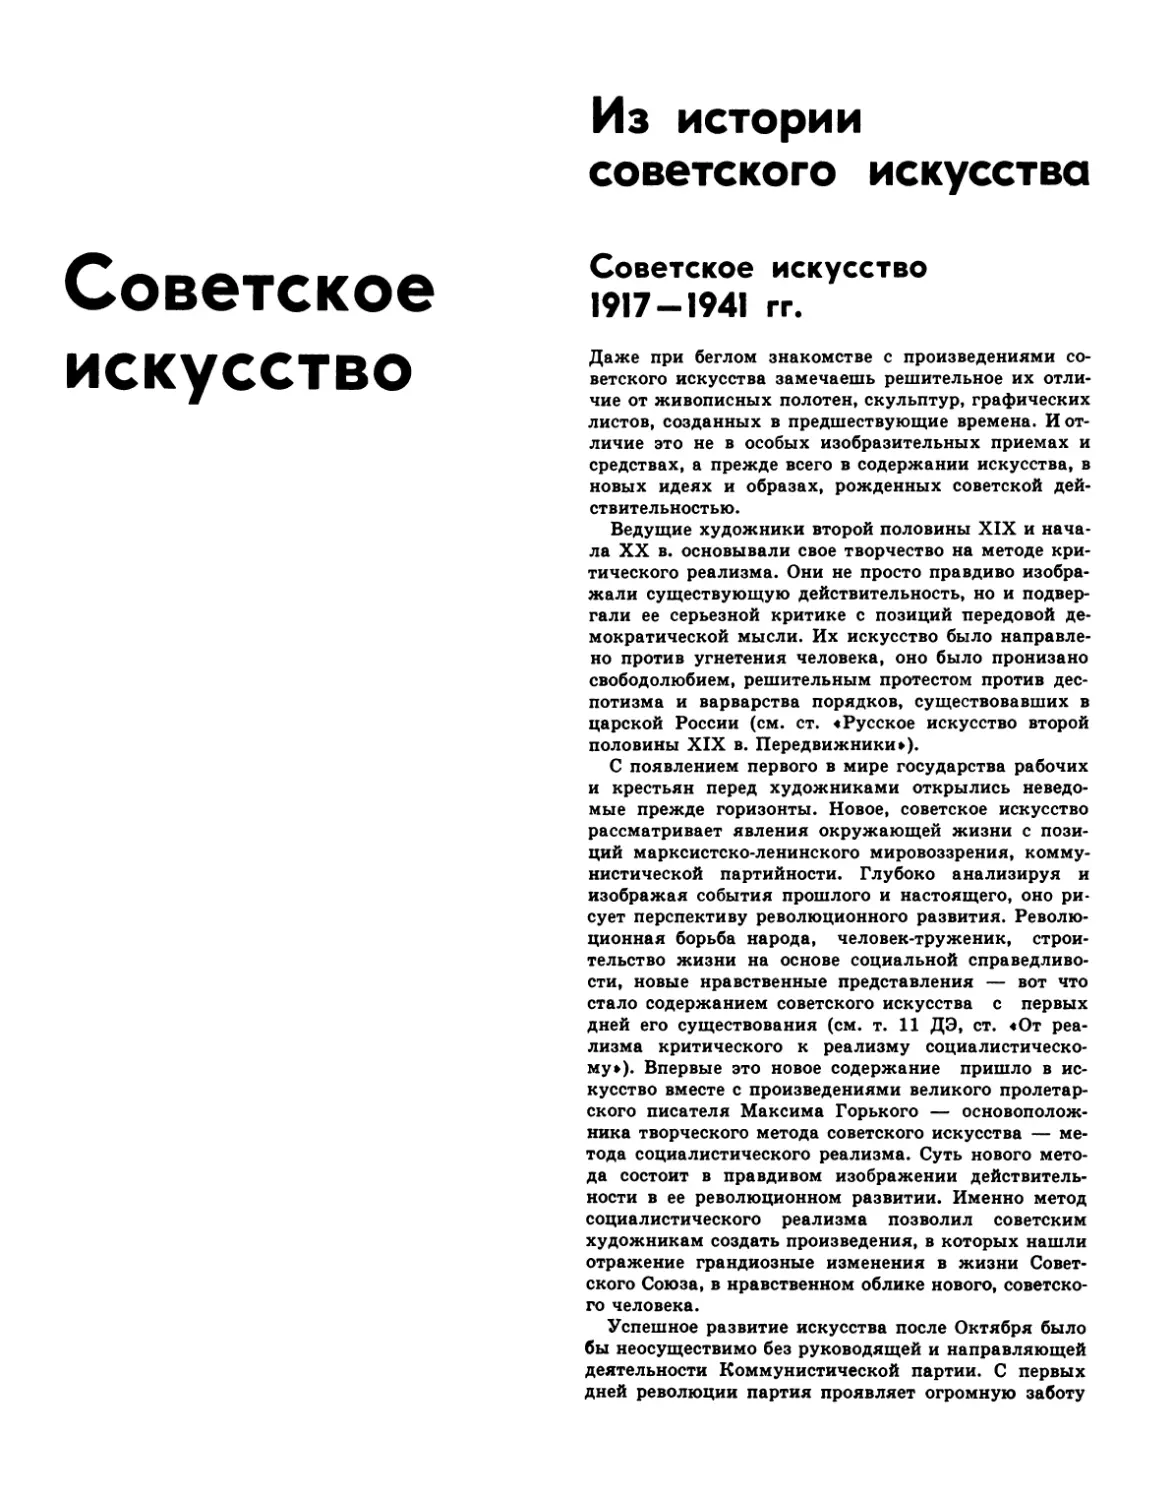 Советское искусство
Советское искусство 1917—1941 гг.